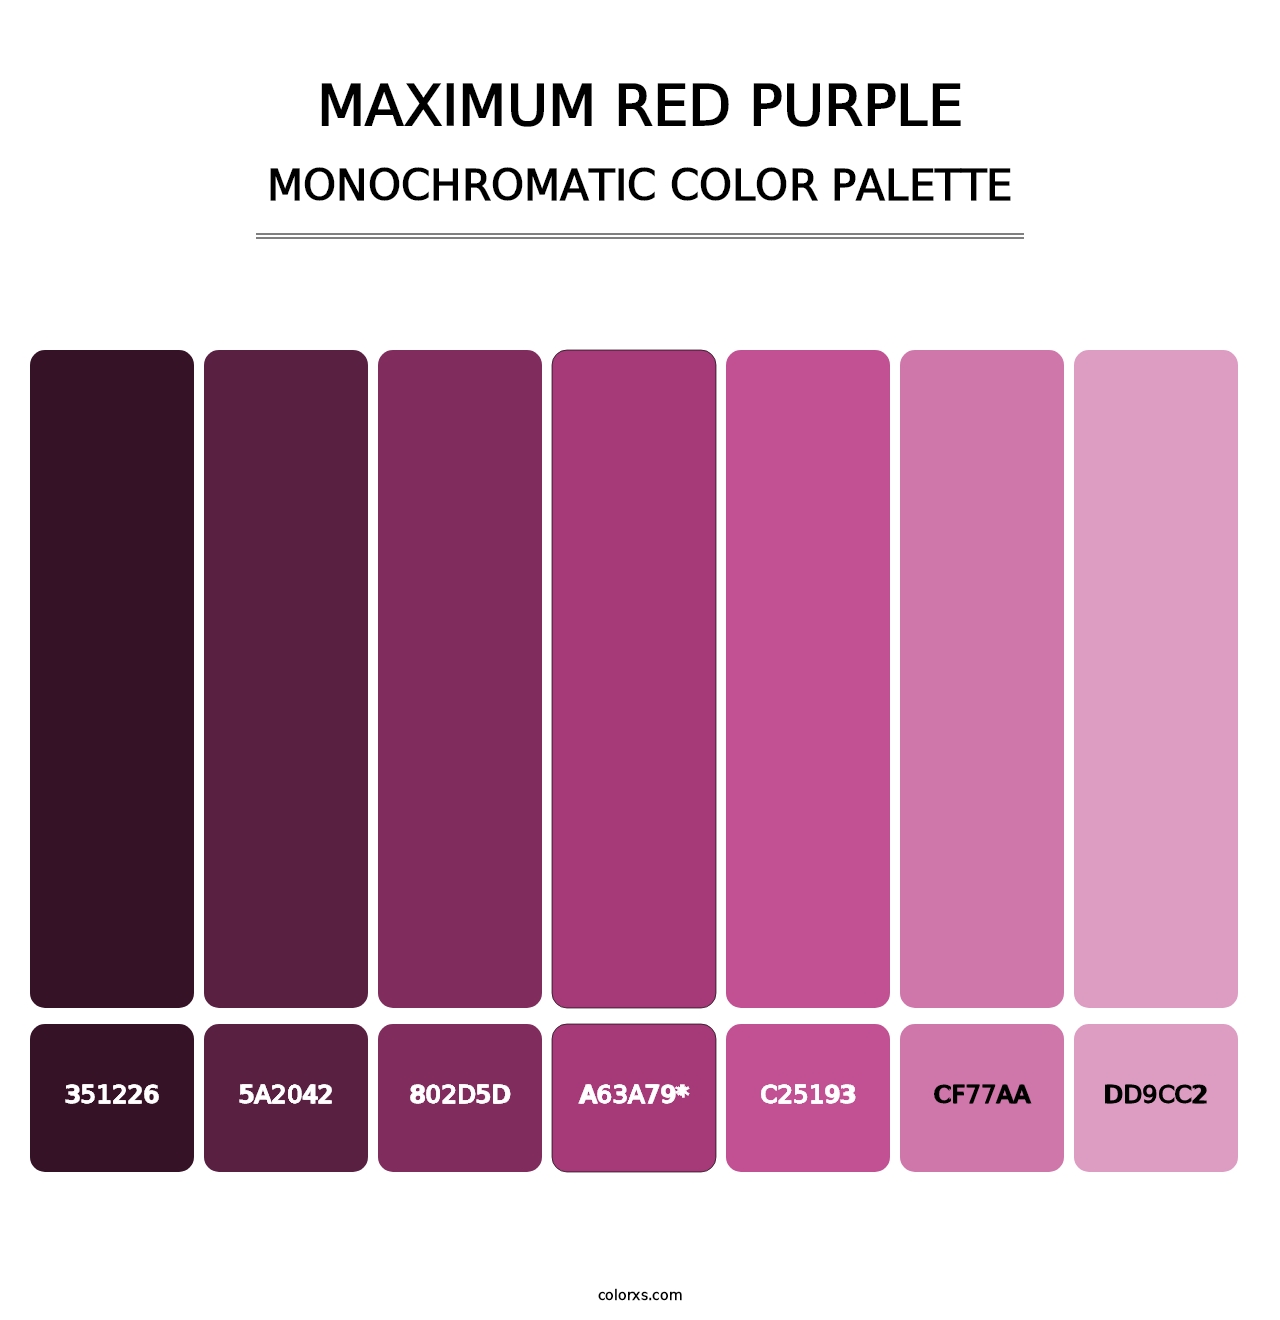 Maximum Red Purple - Monochromatic Color Palette